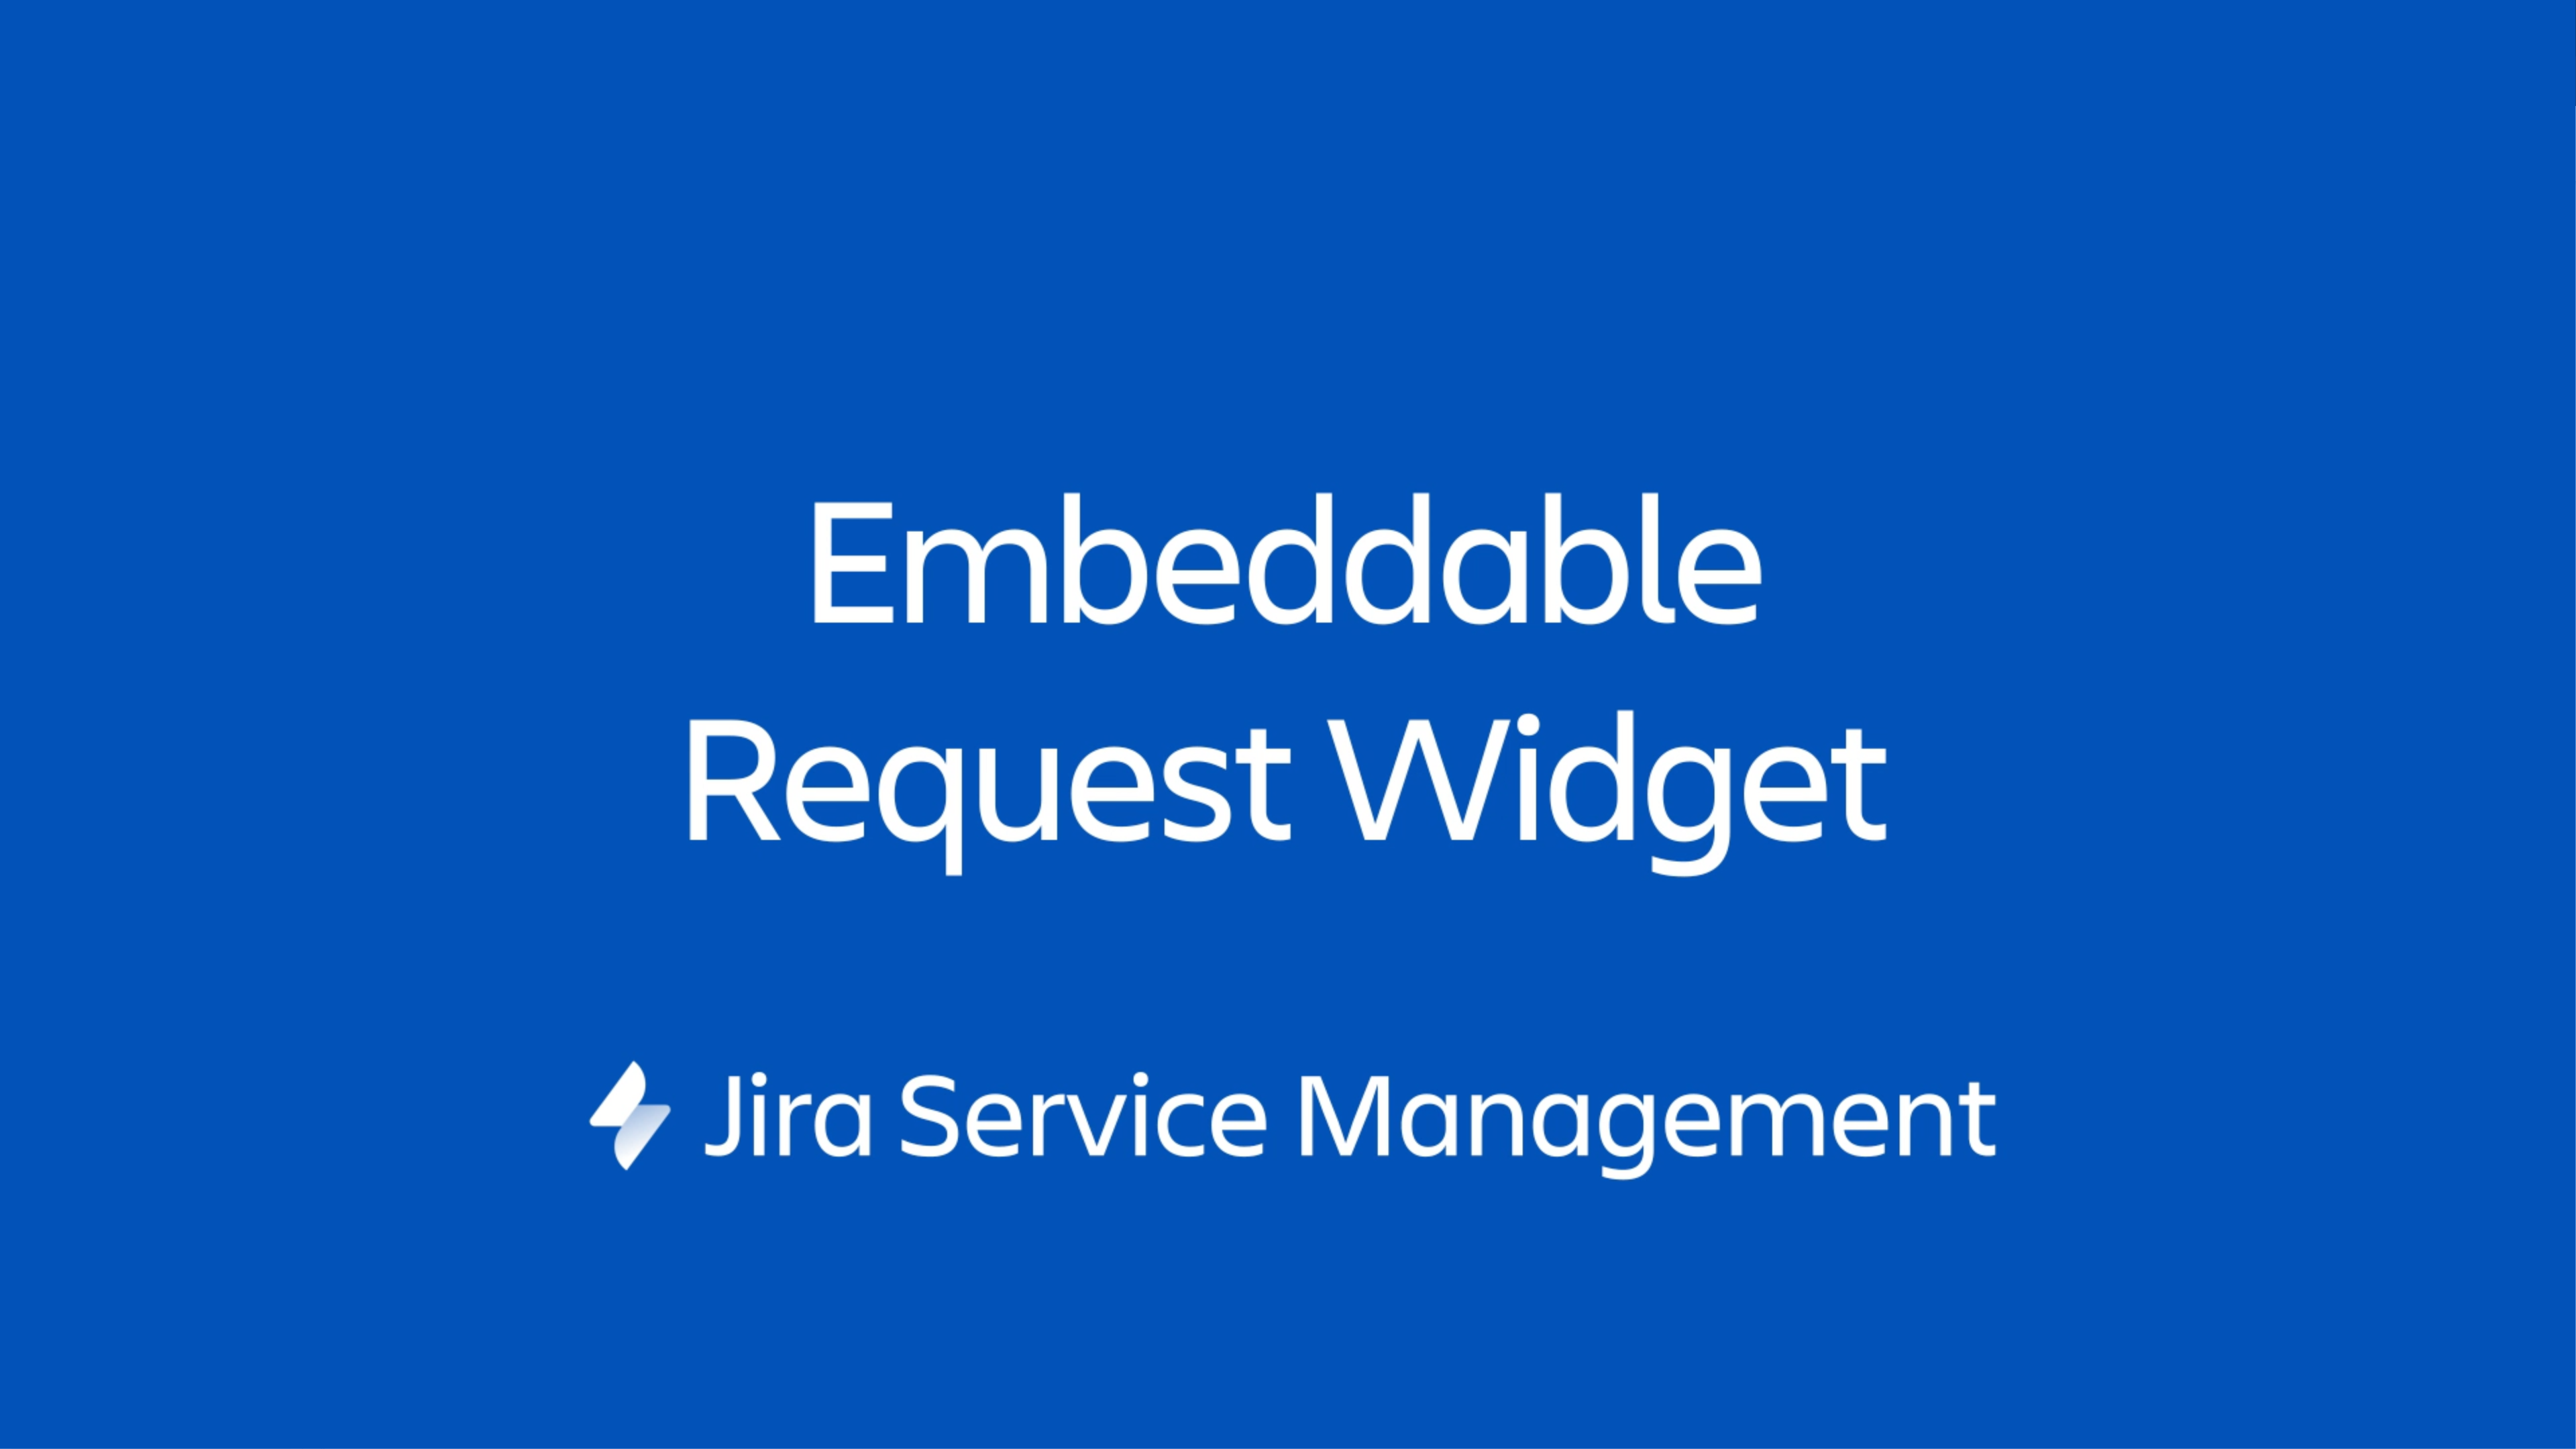 O widget do Jira Service Management é um miniportal que pode ser integrado a qualquer página da web que você controla.